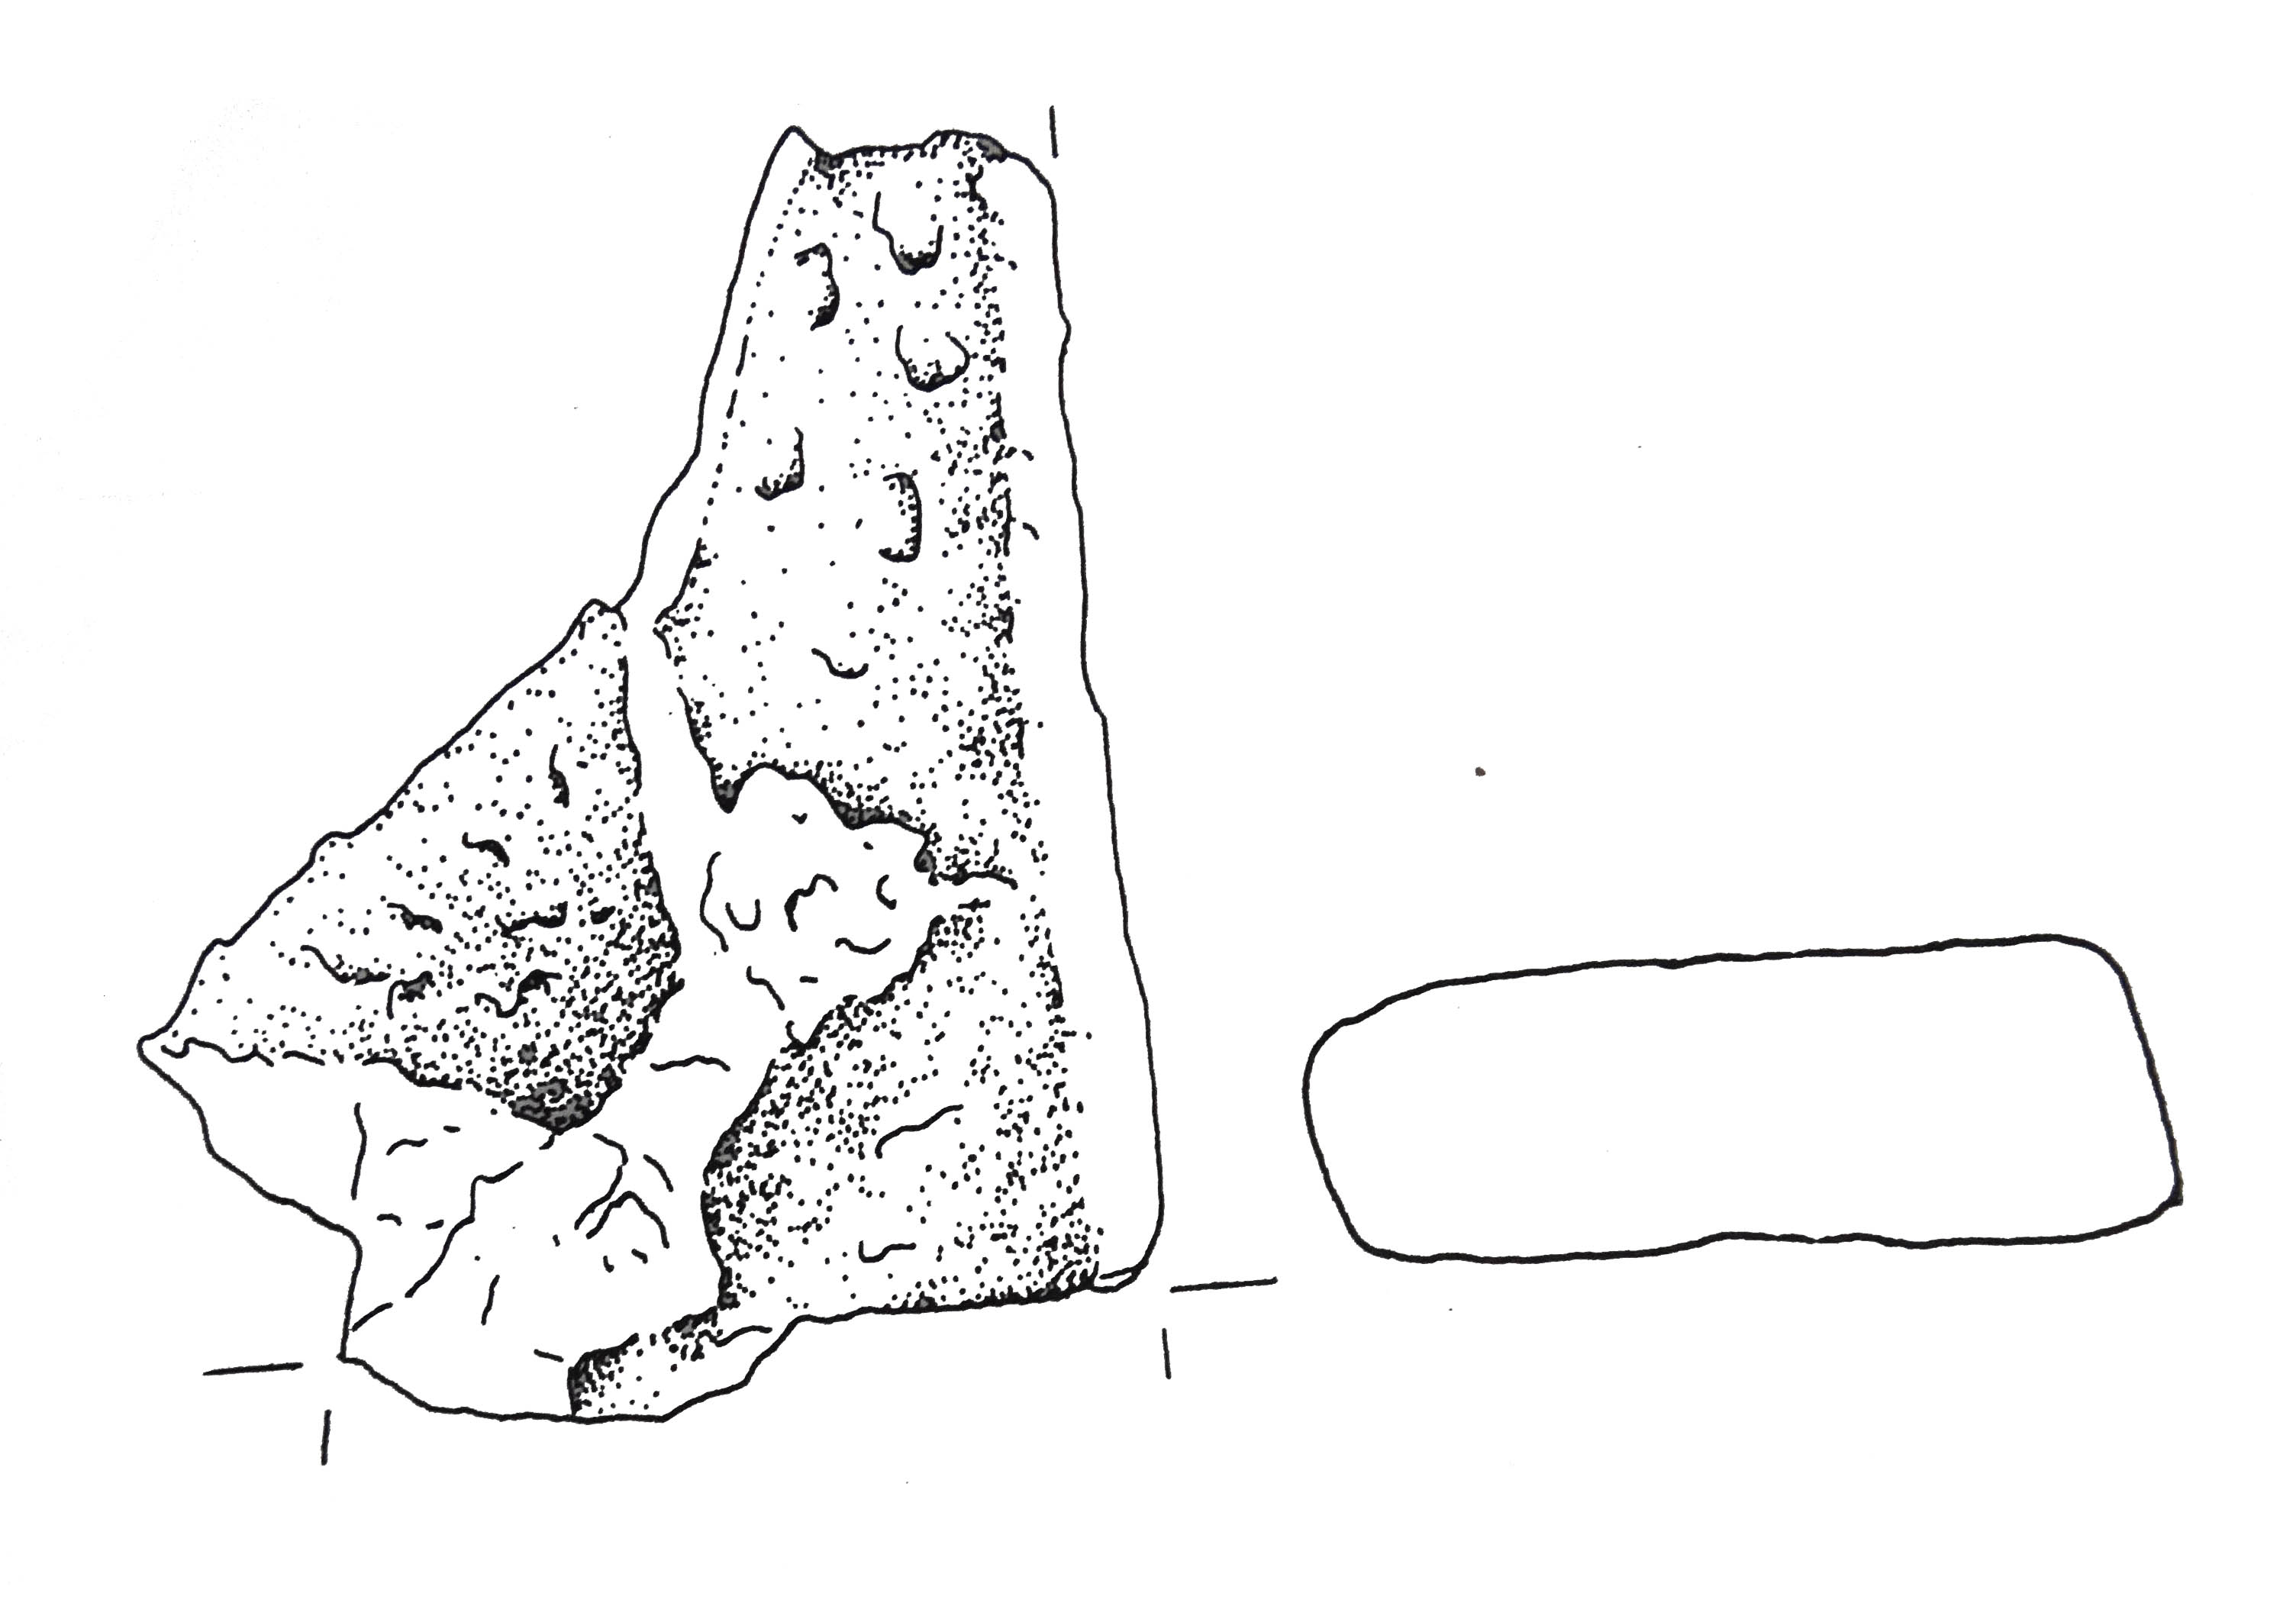 pane/frammento, a barra? - Cultura dell'età del bronzo finale-Friuli Centrale (fine/inizio tarda età del Bronzo)